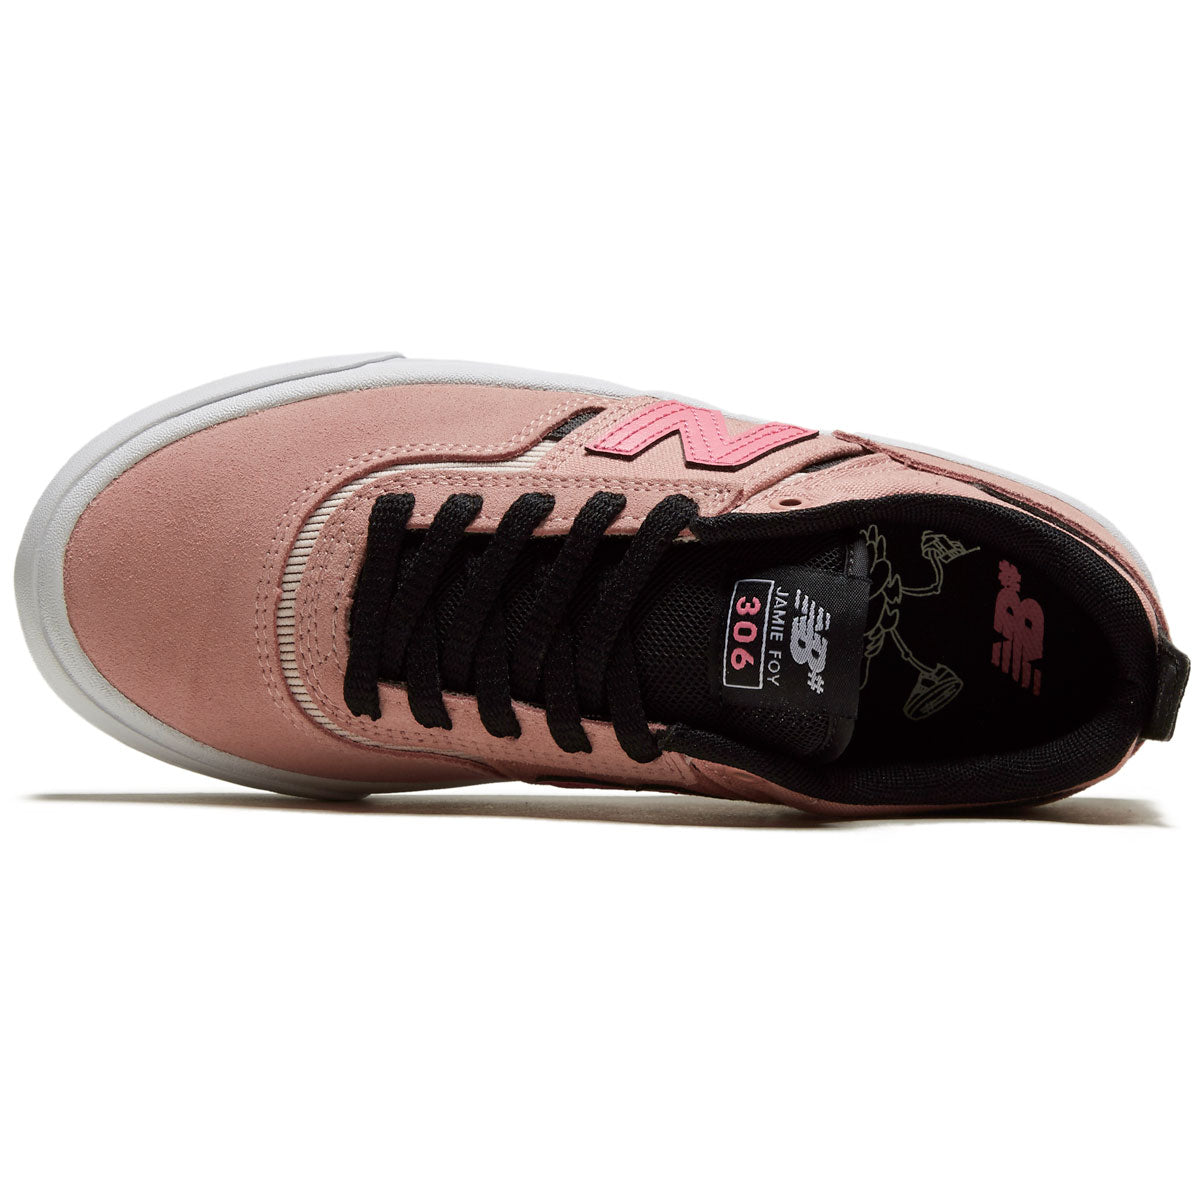 New Balance 306 Foy Shoes - Pink/Black image 3